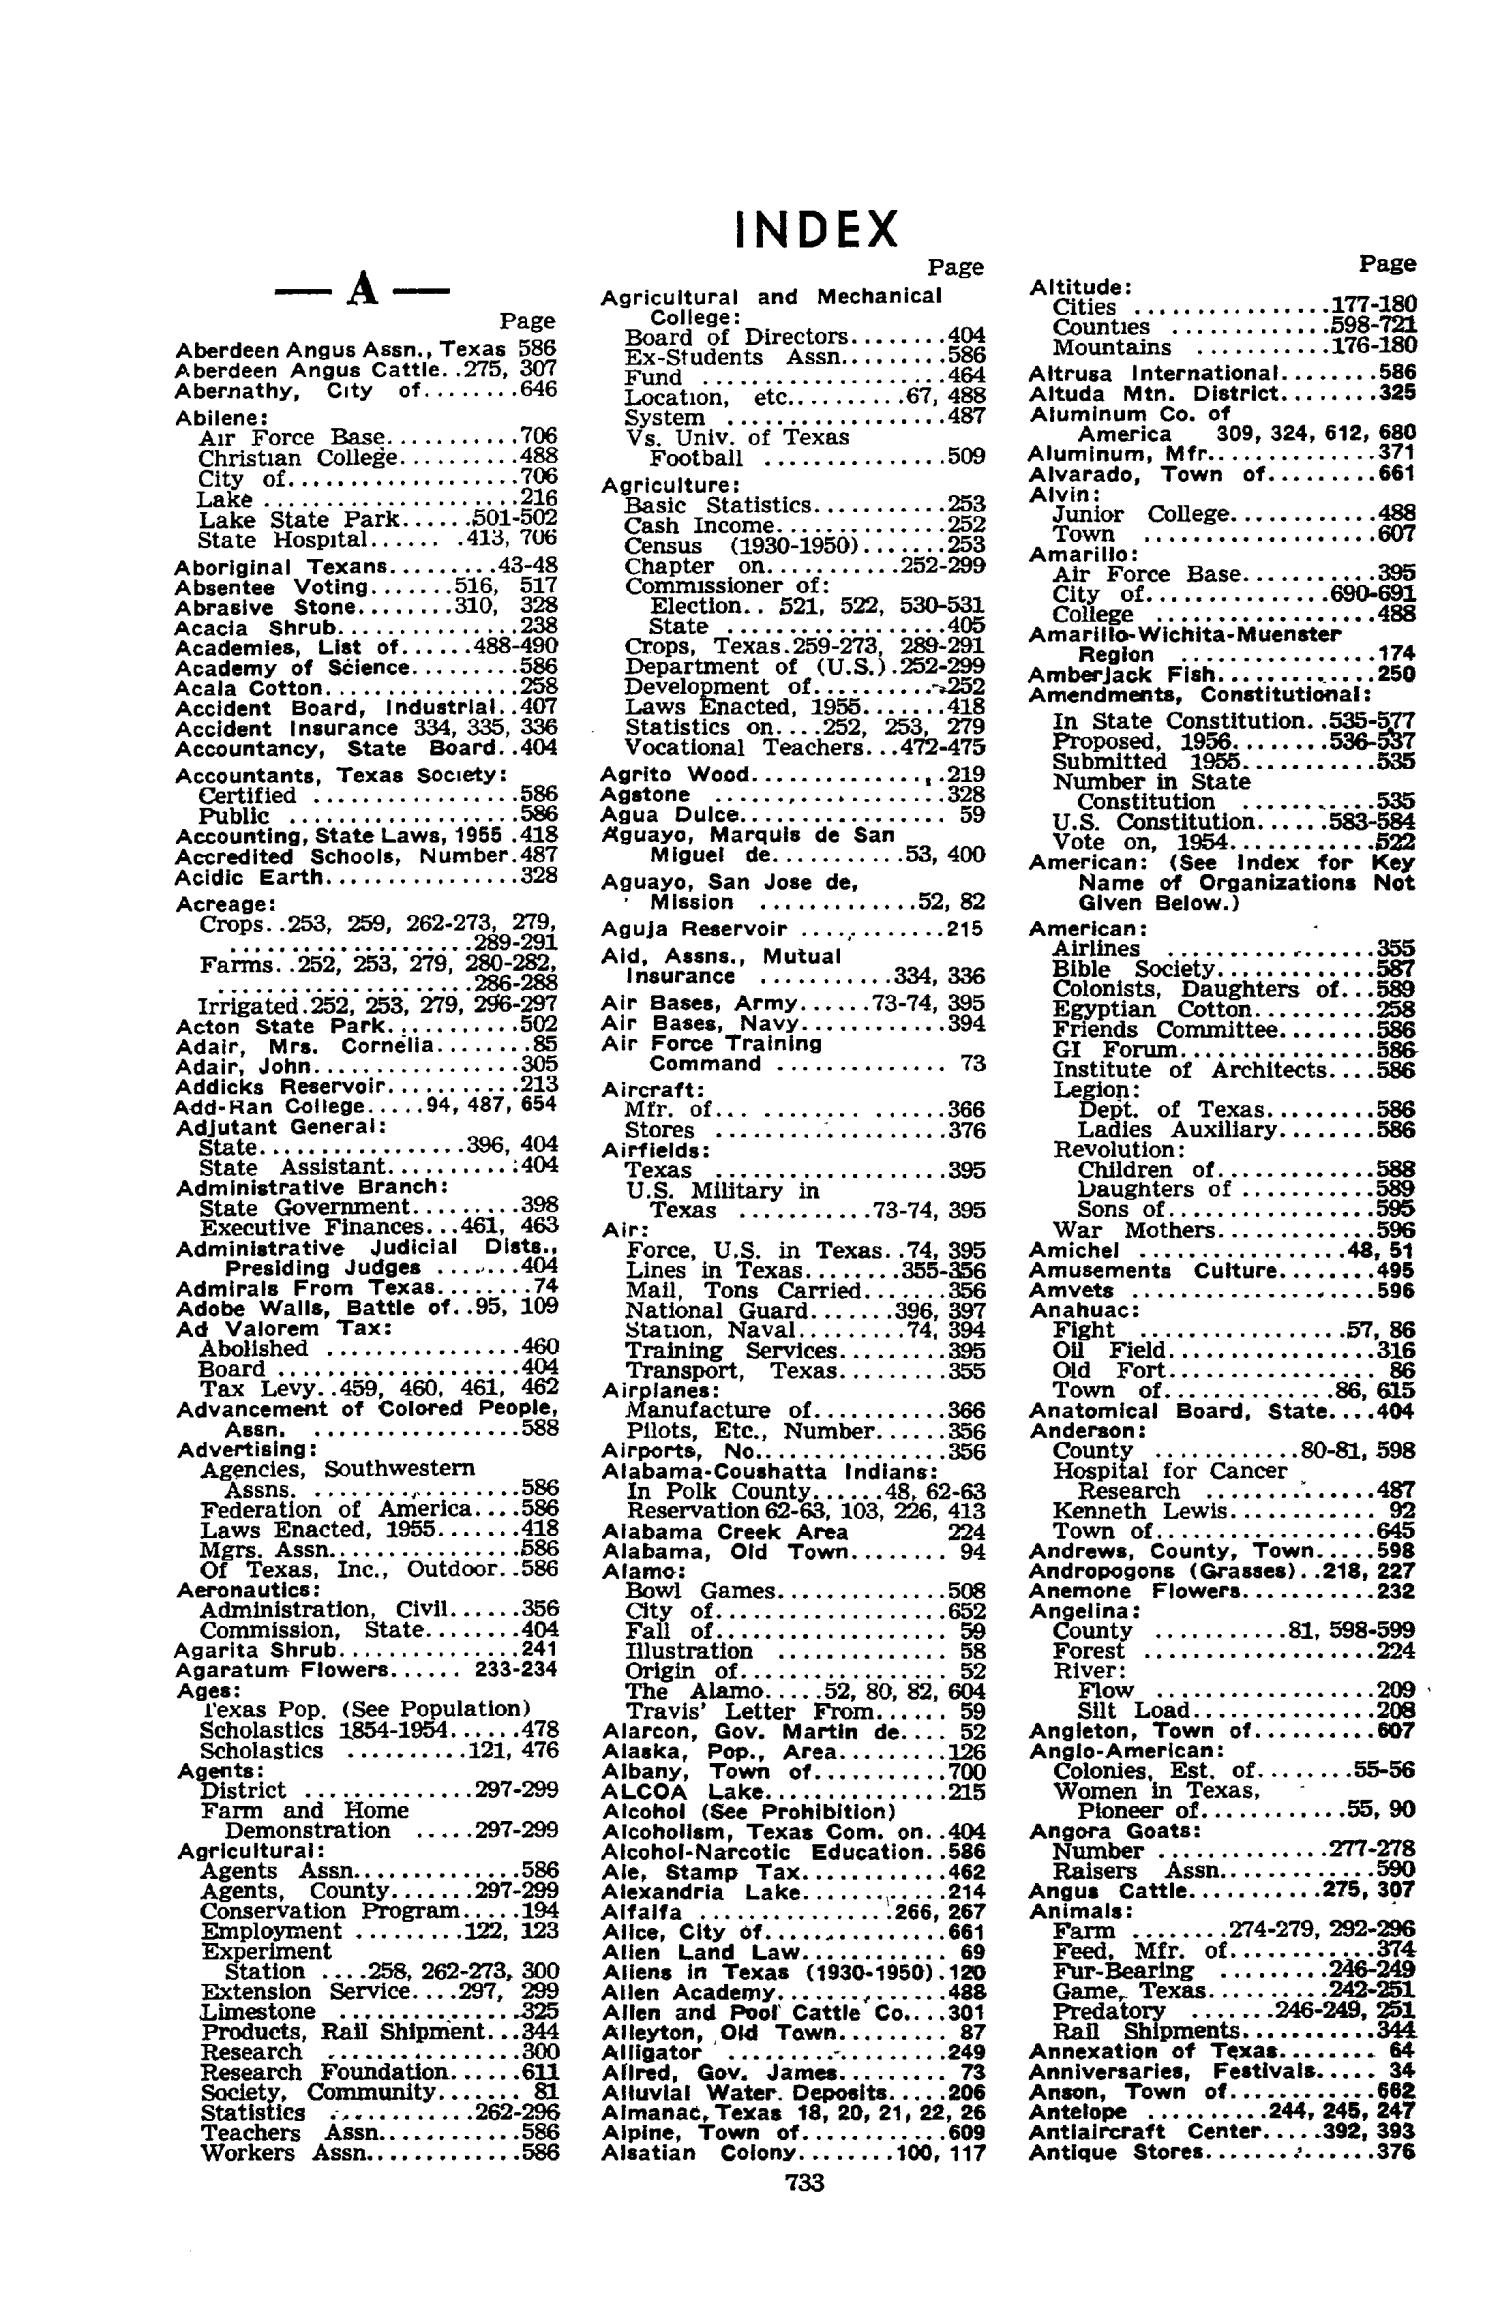 Texas Almanac, 1956-1957
                                                
                                                    733
                                                